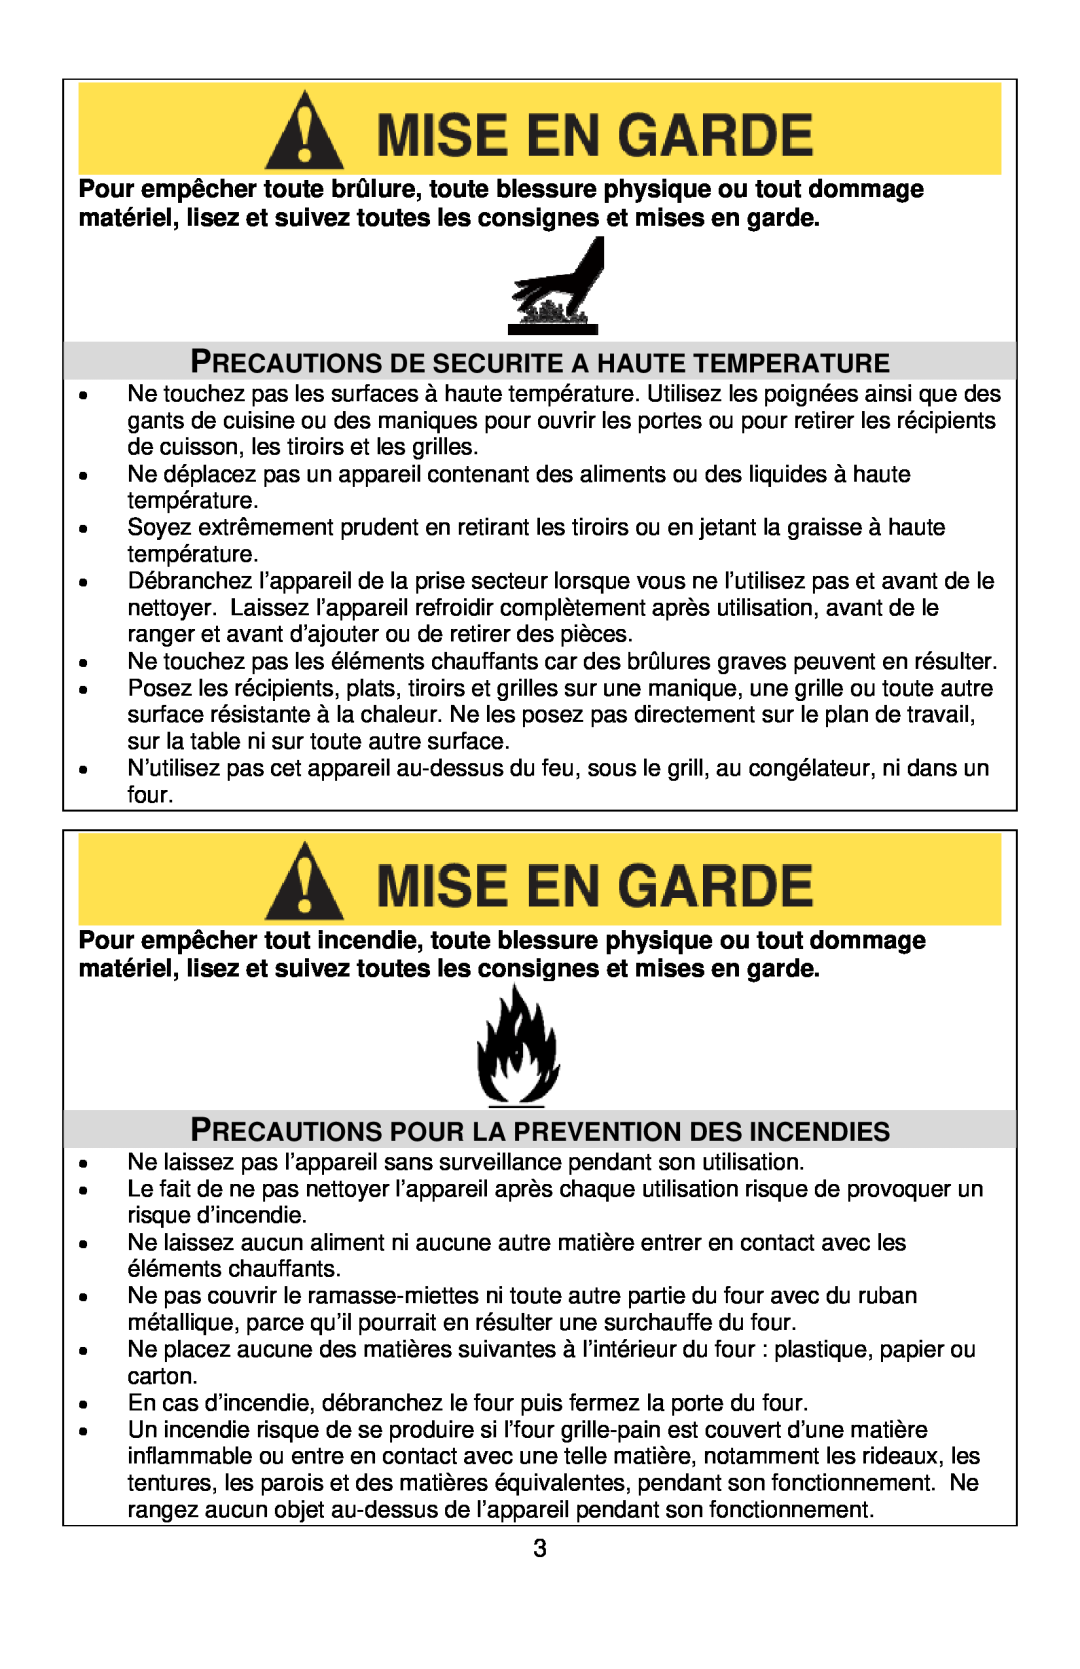 West Bend L5704, SHTO100 Precautions De Securite A Haute Temperature, Precautions Pour La Prevention Des Incendies 